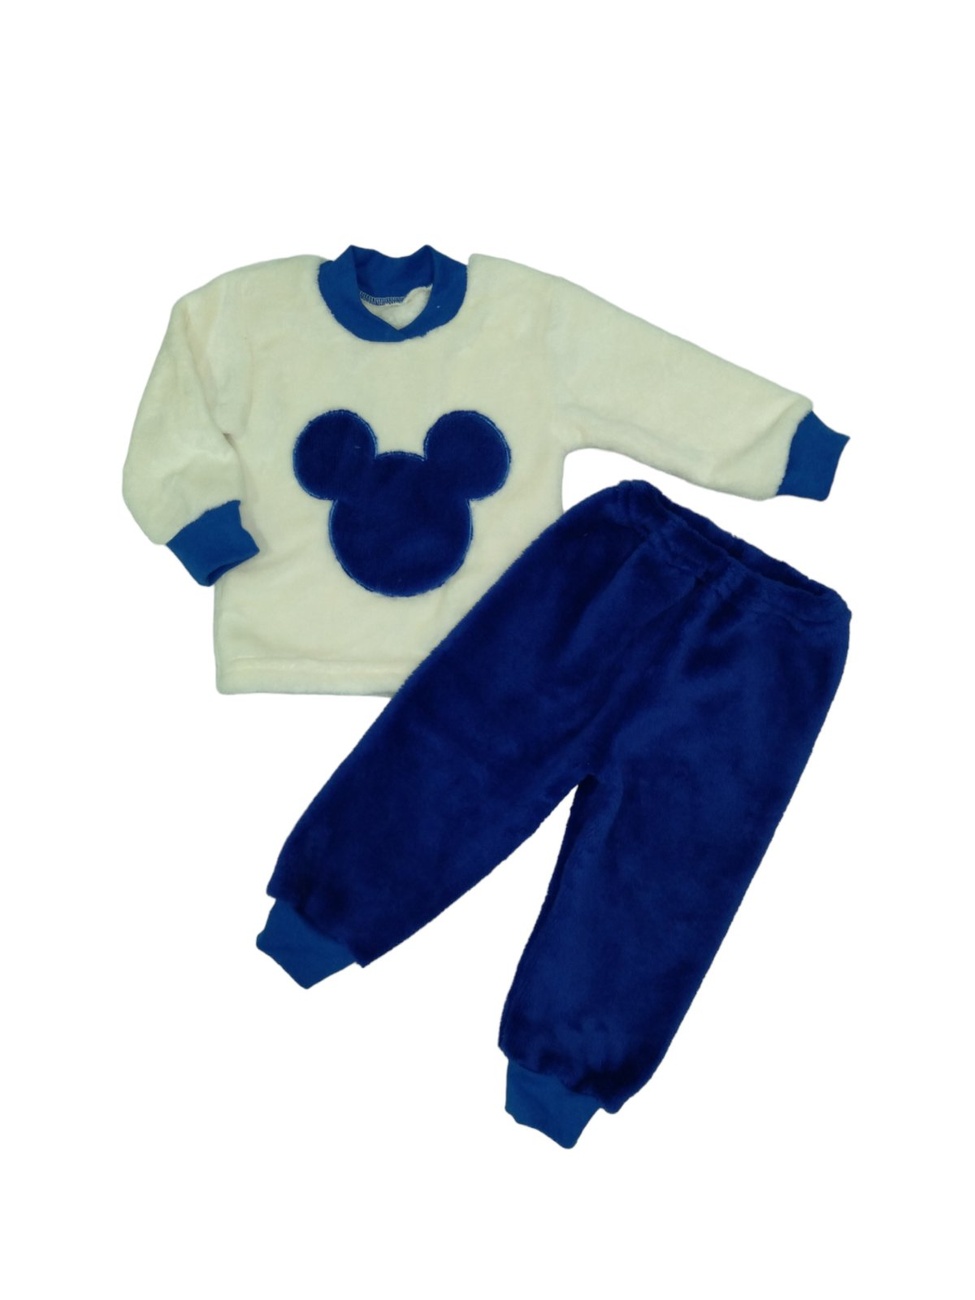 Дитячі трикотажні піжами для хлопчика. Піжама комбінована рвана махра синього кольору. ТМ «Пташка Украина»